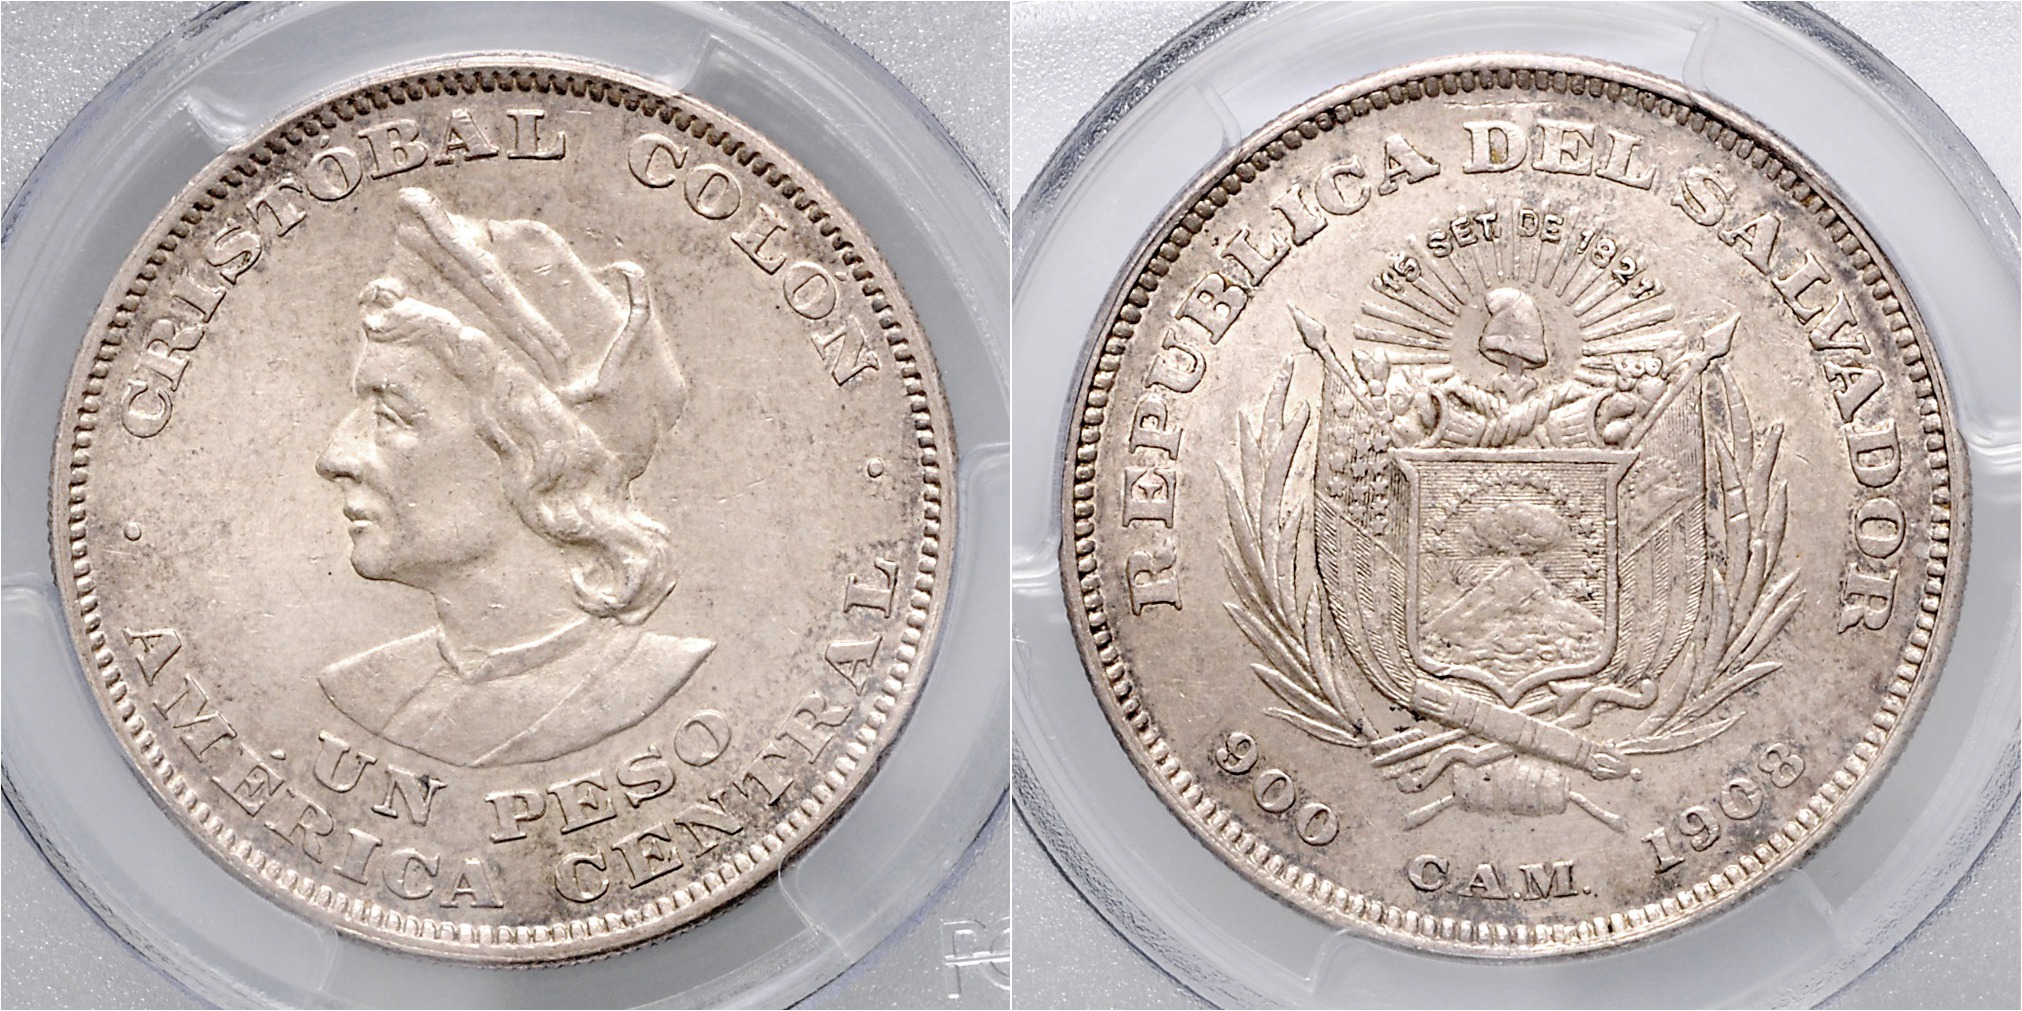 Silver $5 Proof Coin 2016 Niue 2 OZ Ferdinand Magellan